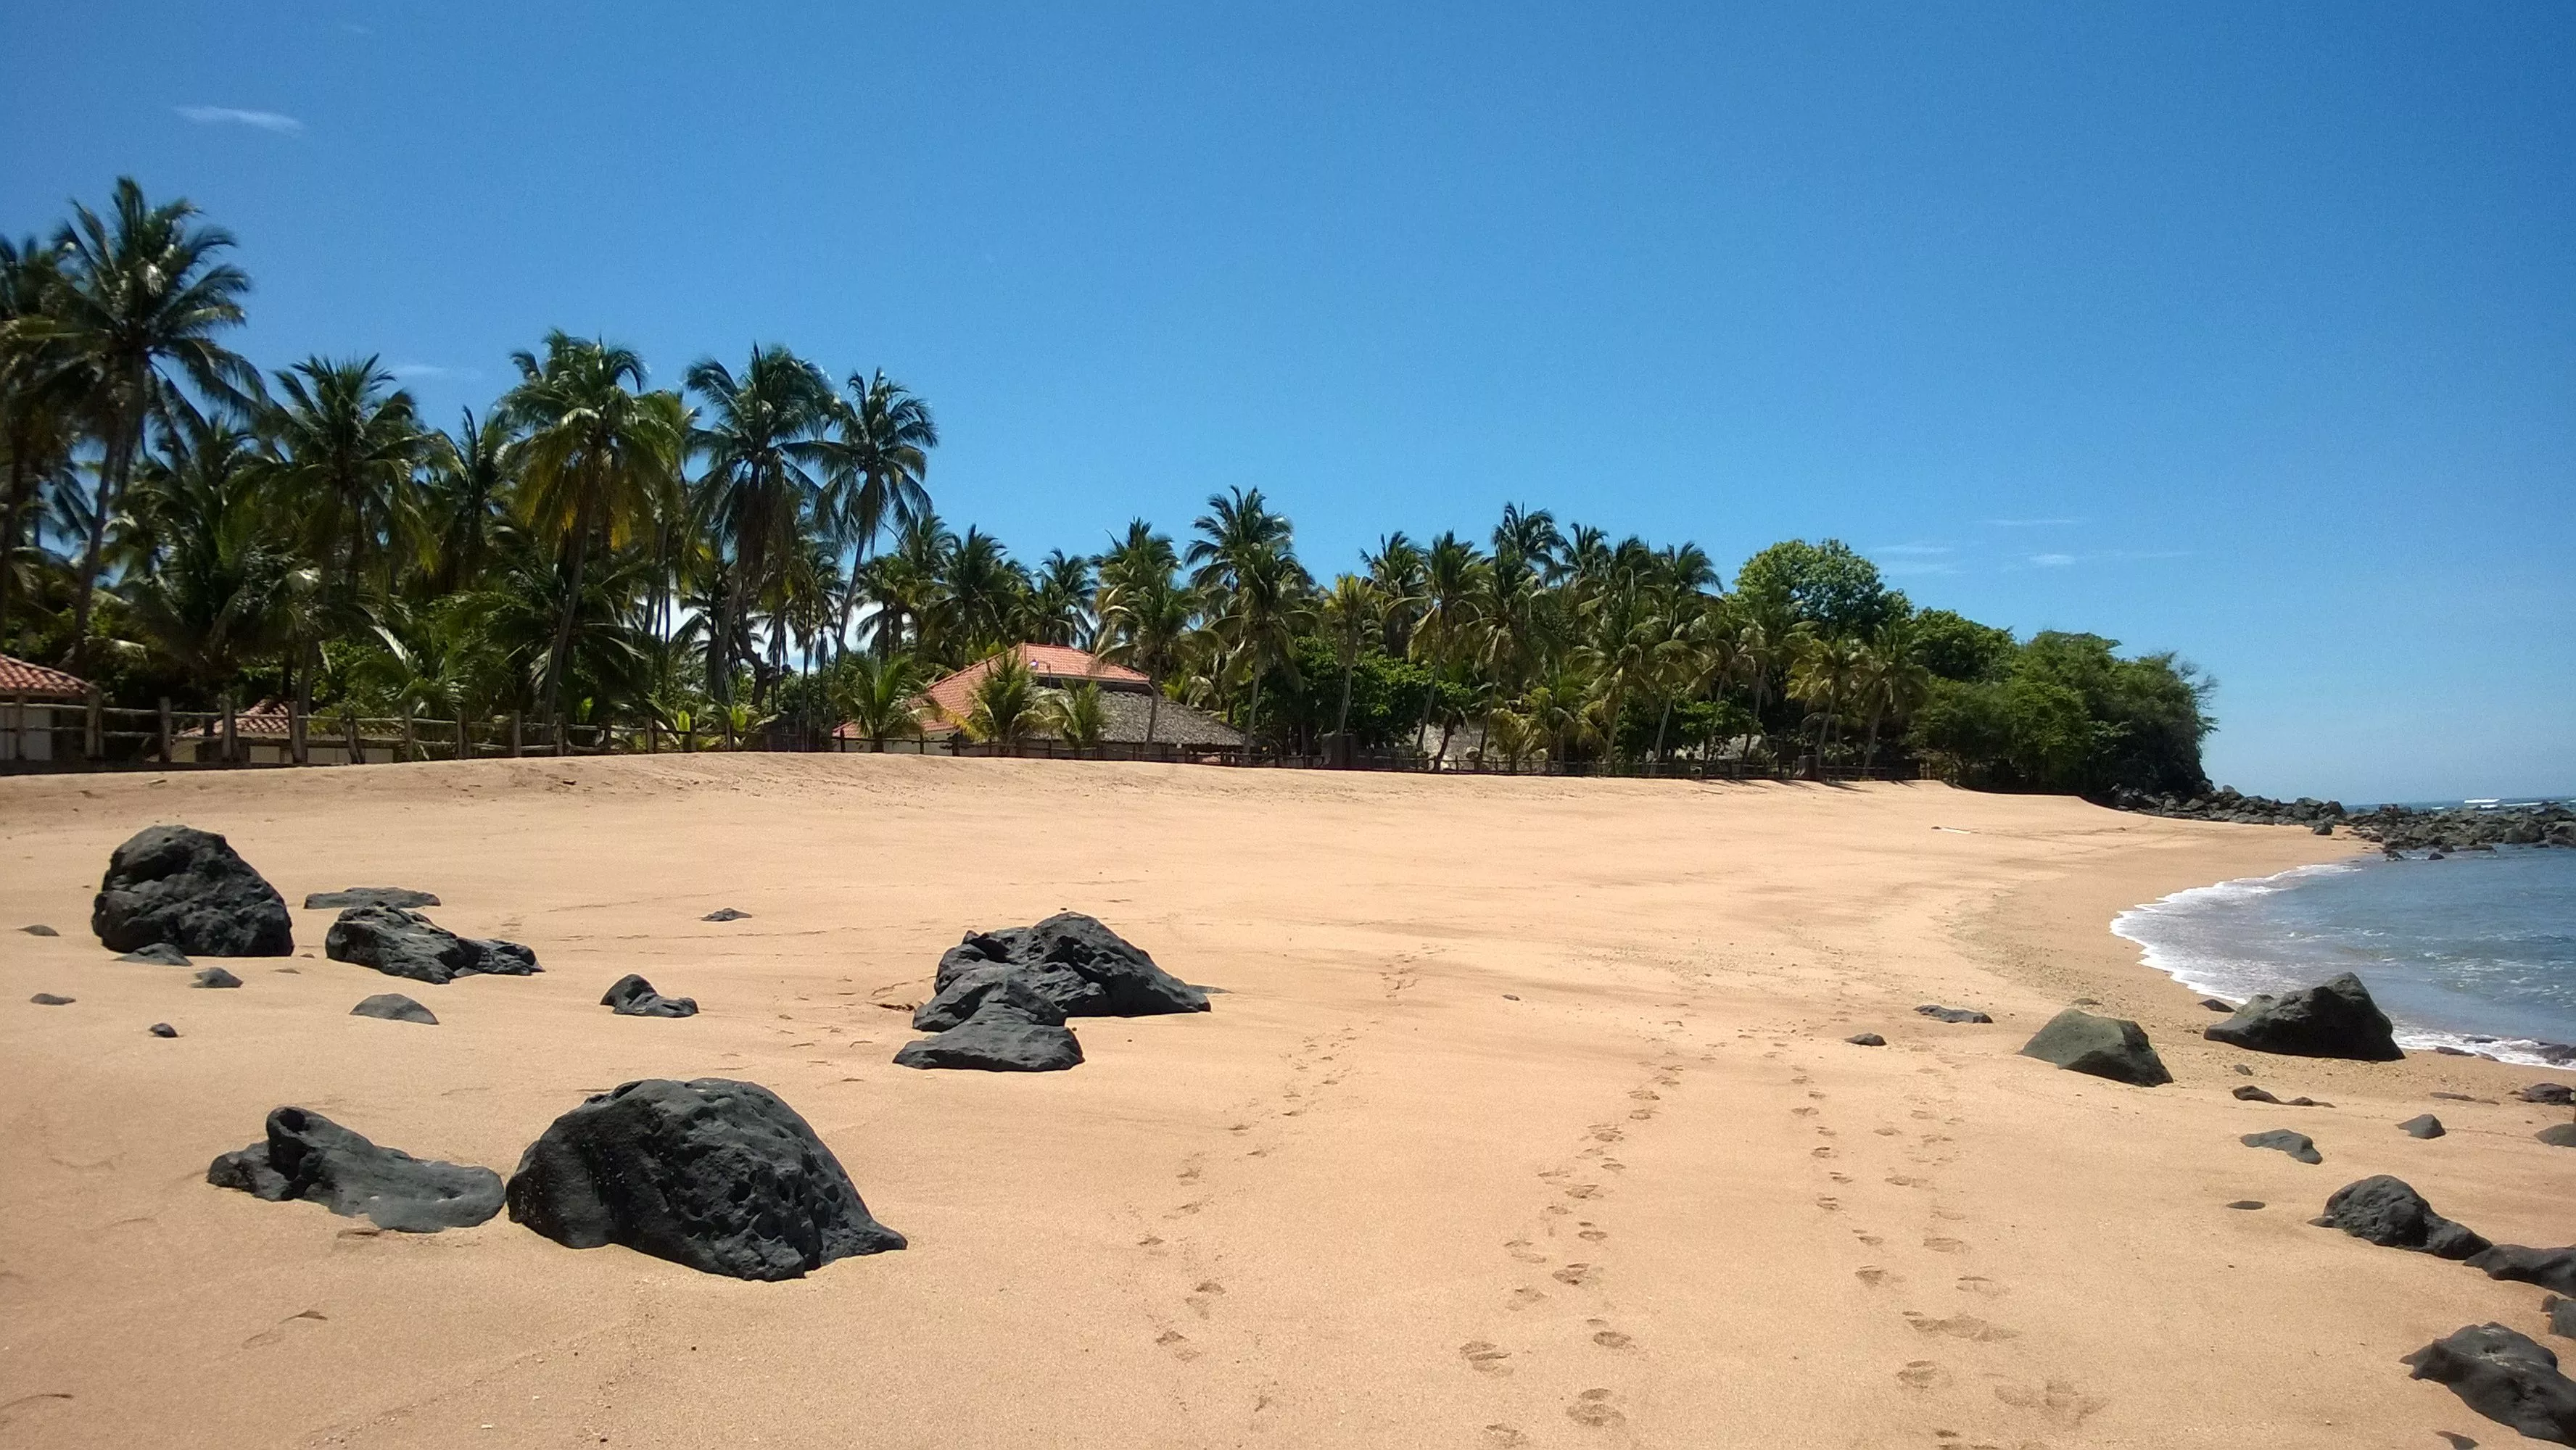 Playa Los Cobanos in El Salvador, North America | Beaches - Rated 3.6